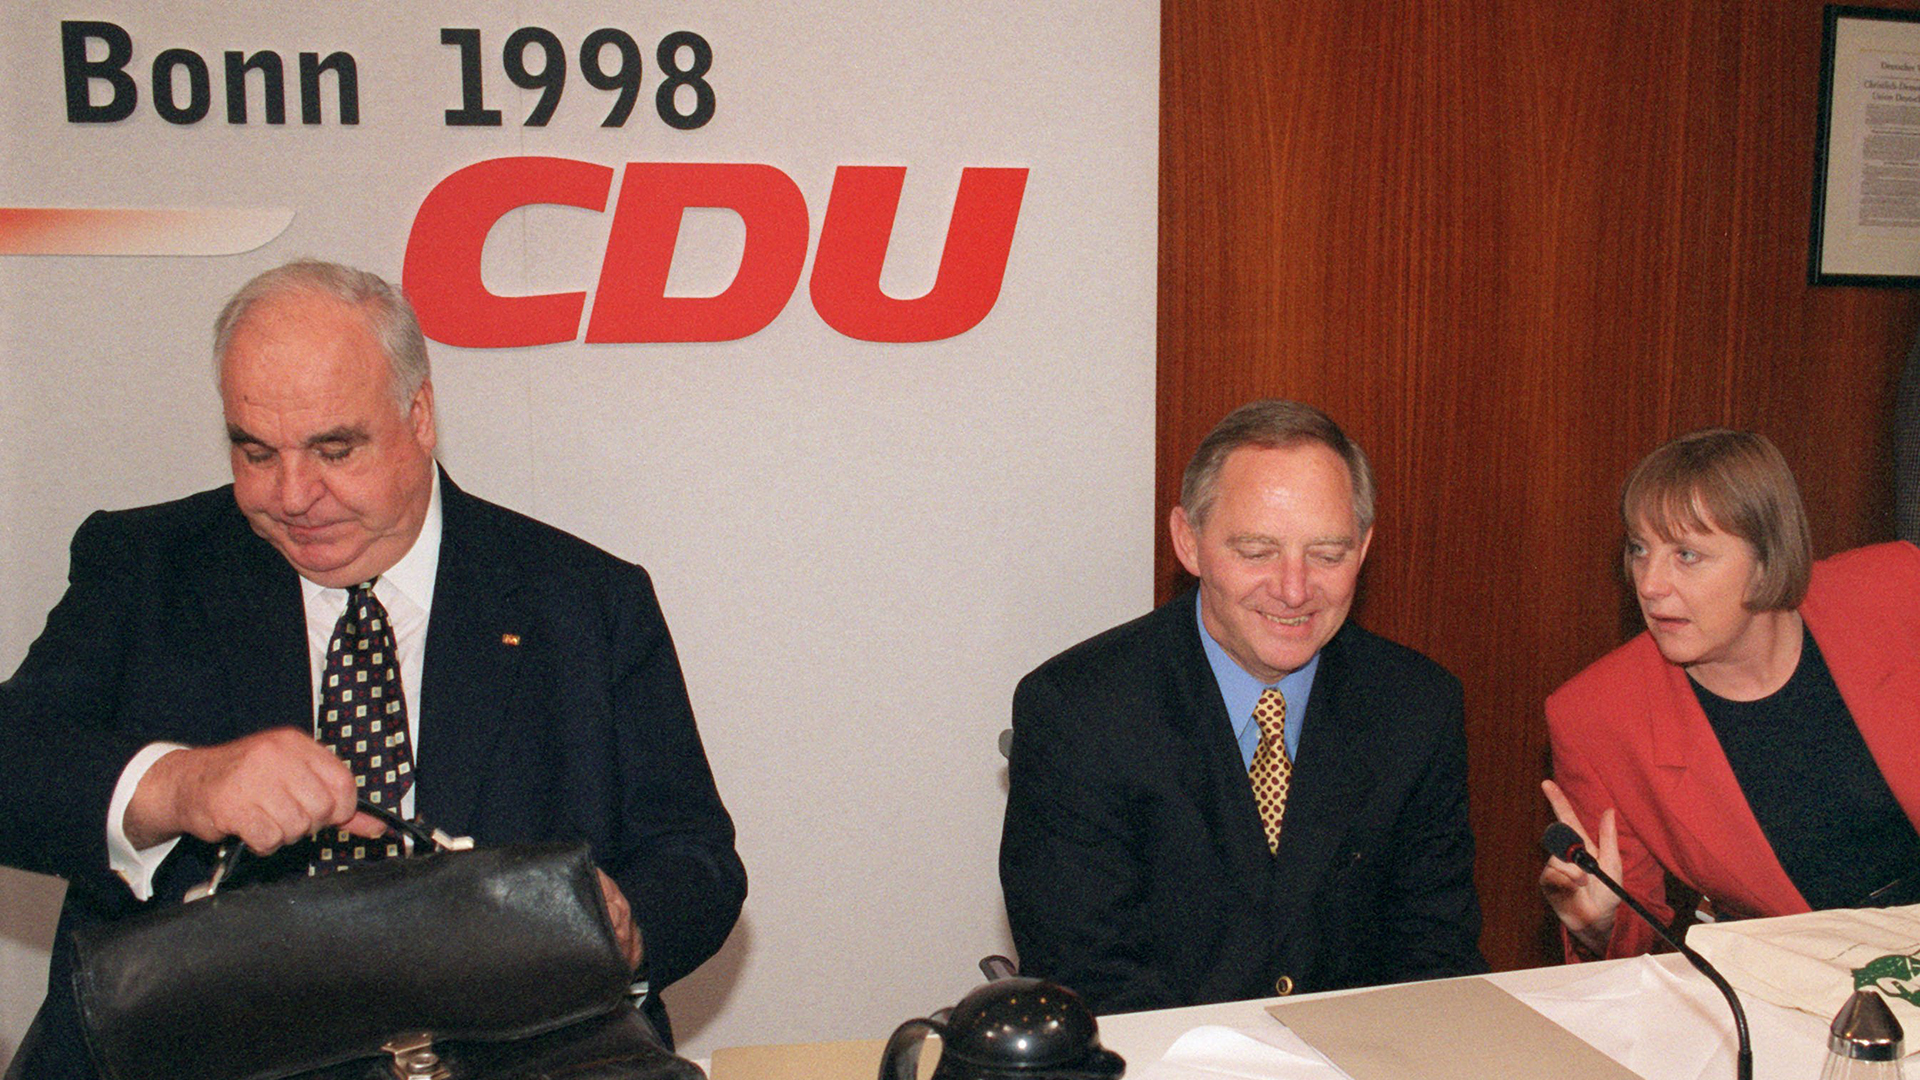 Helmut Kohl gibt 1998 Parteivorsitz an Schäuble  | picture alliance / Martin Athens